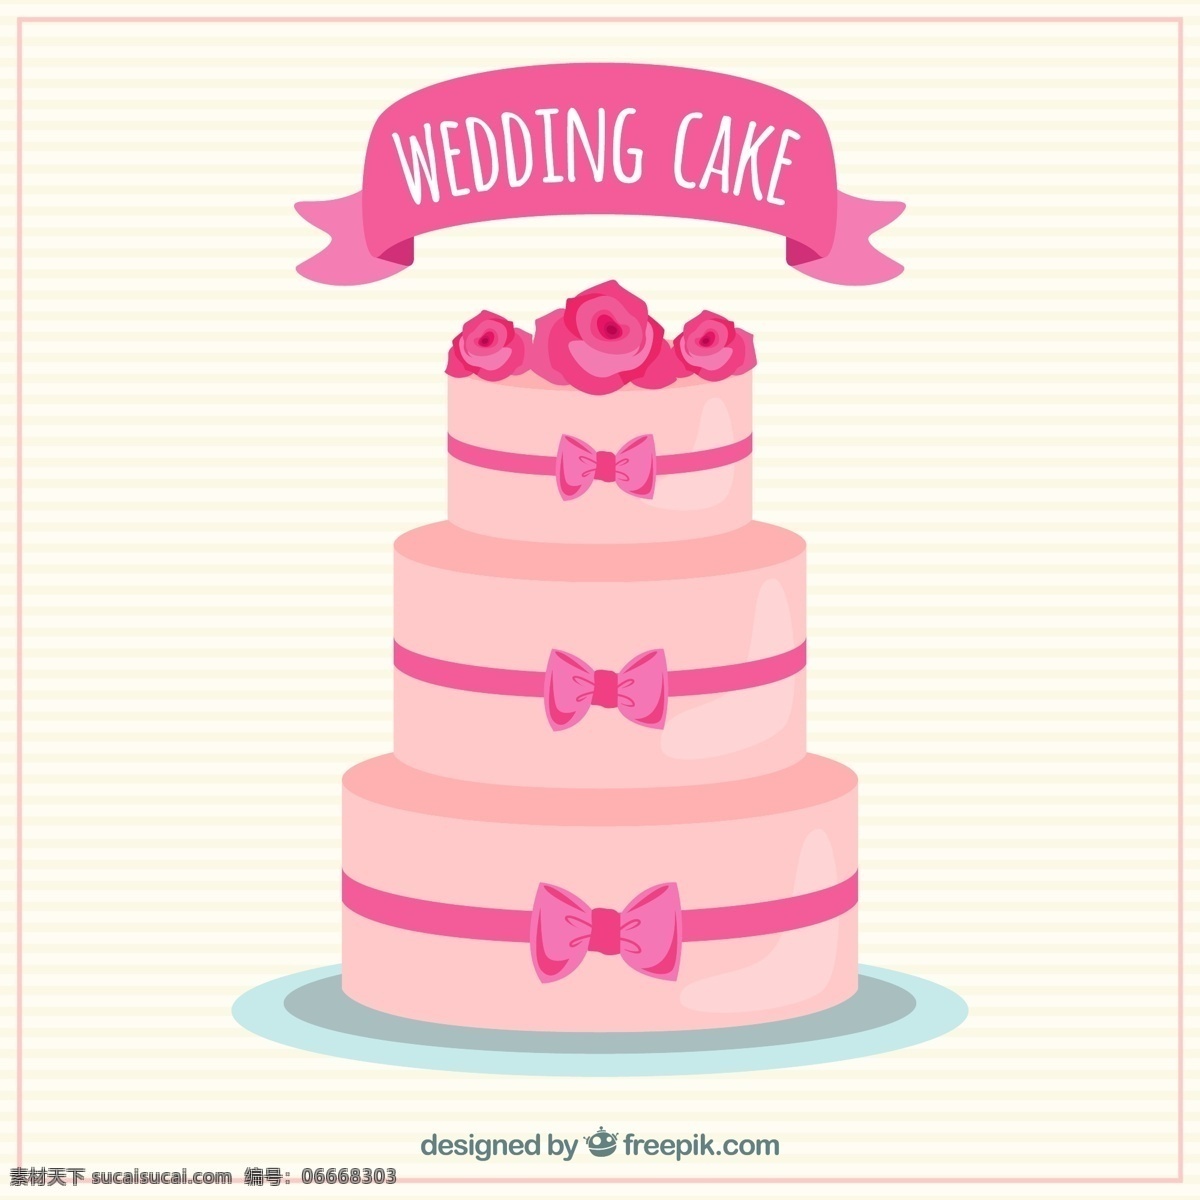 粉色婚礼蛋糕 婚礼 爱情 蛋糕 面包 粉红色 庆祝 甜蜜 浪漫 庆祝订婚 婚礼蛋糕 仪式 美味 pinky 白色